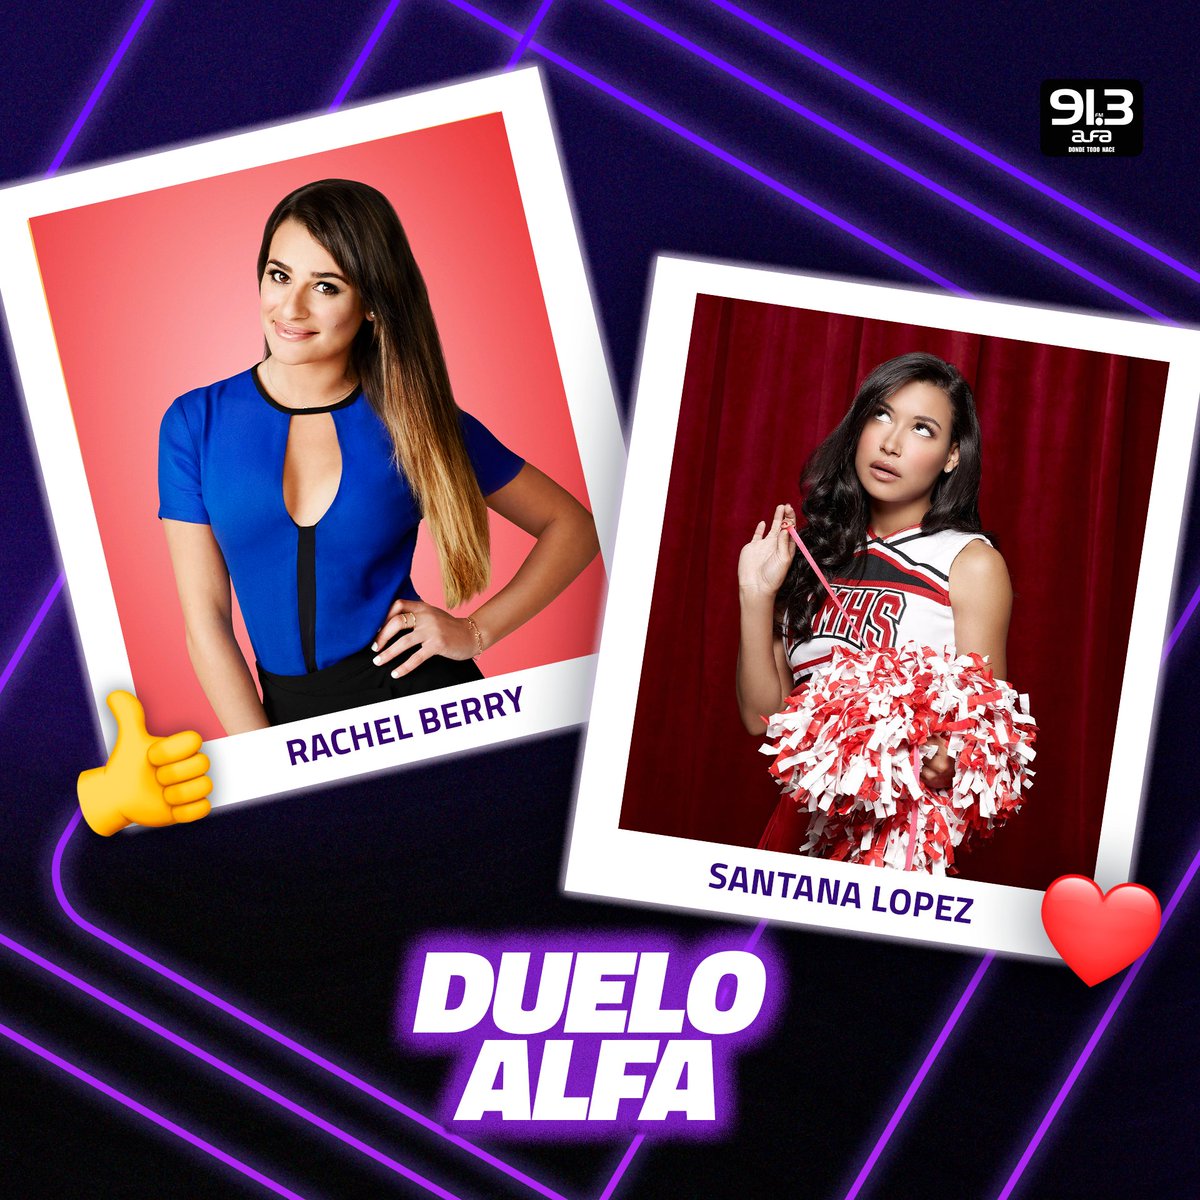 #DueloAlfa ¿Quién fue tu favorita del #ClubGlee? 🌟 #RachelBerry vs #SantanaLopez